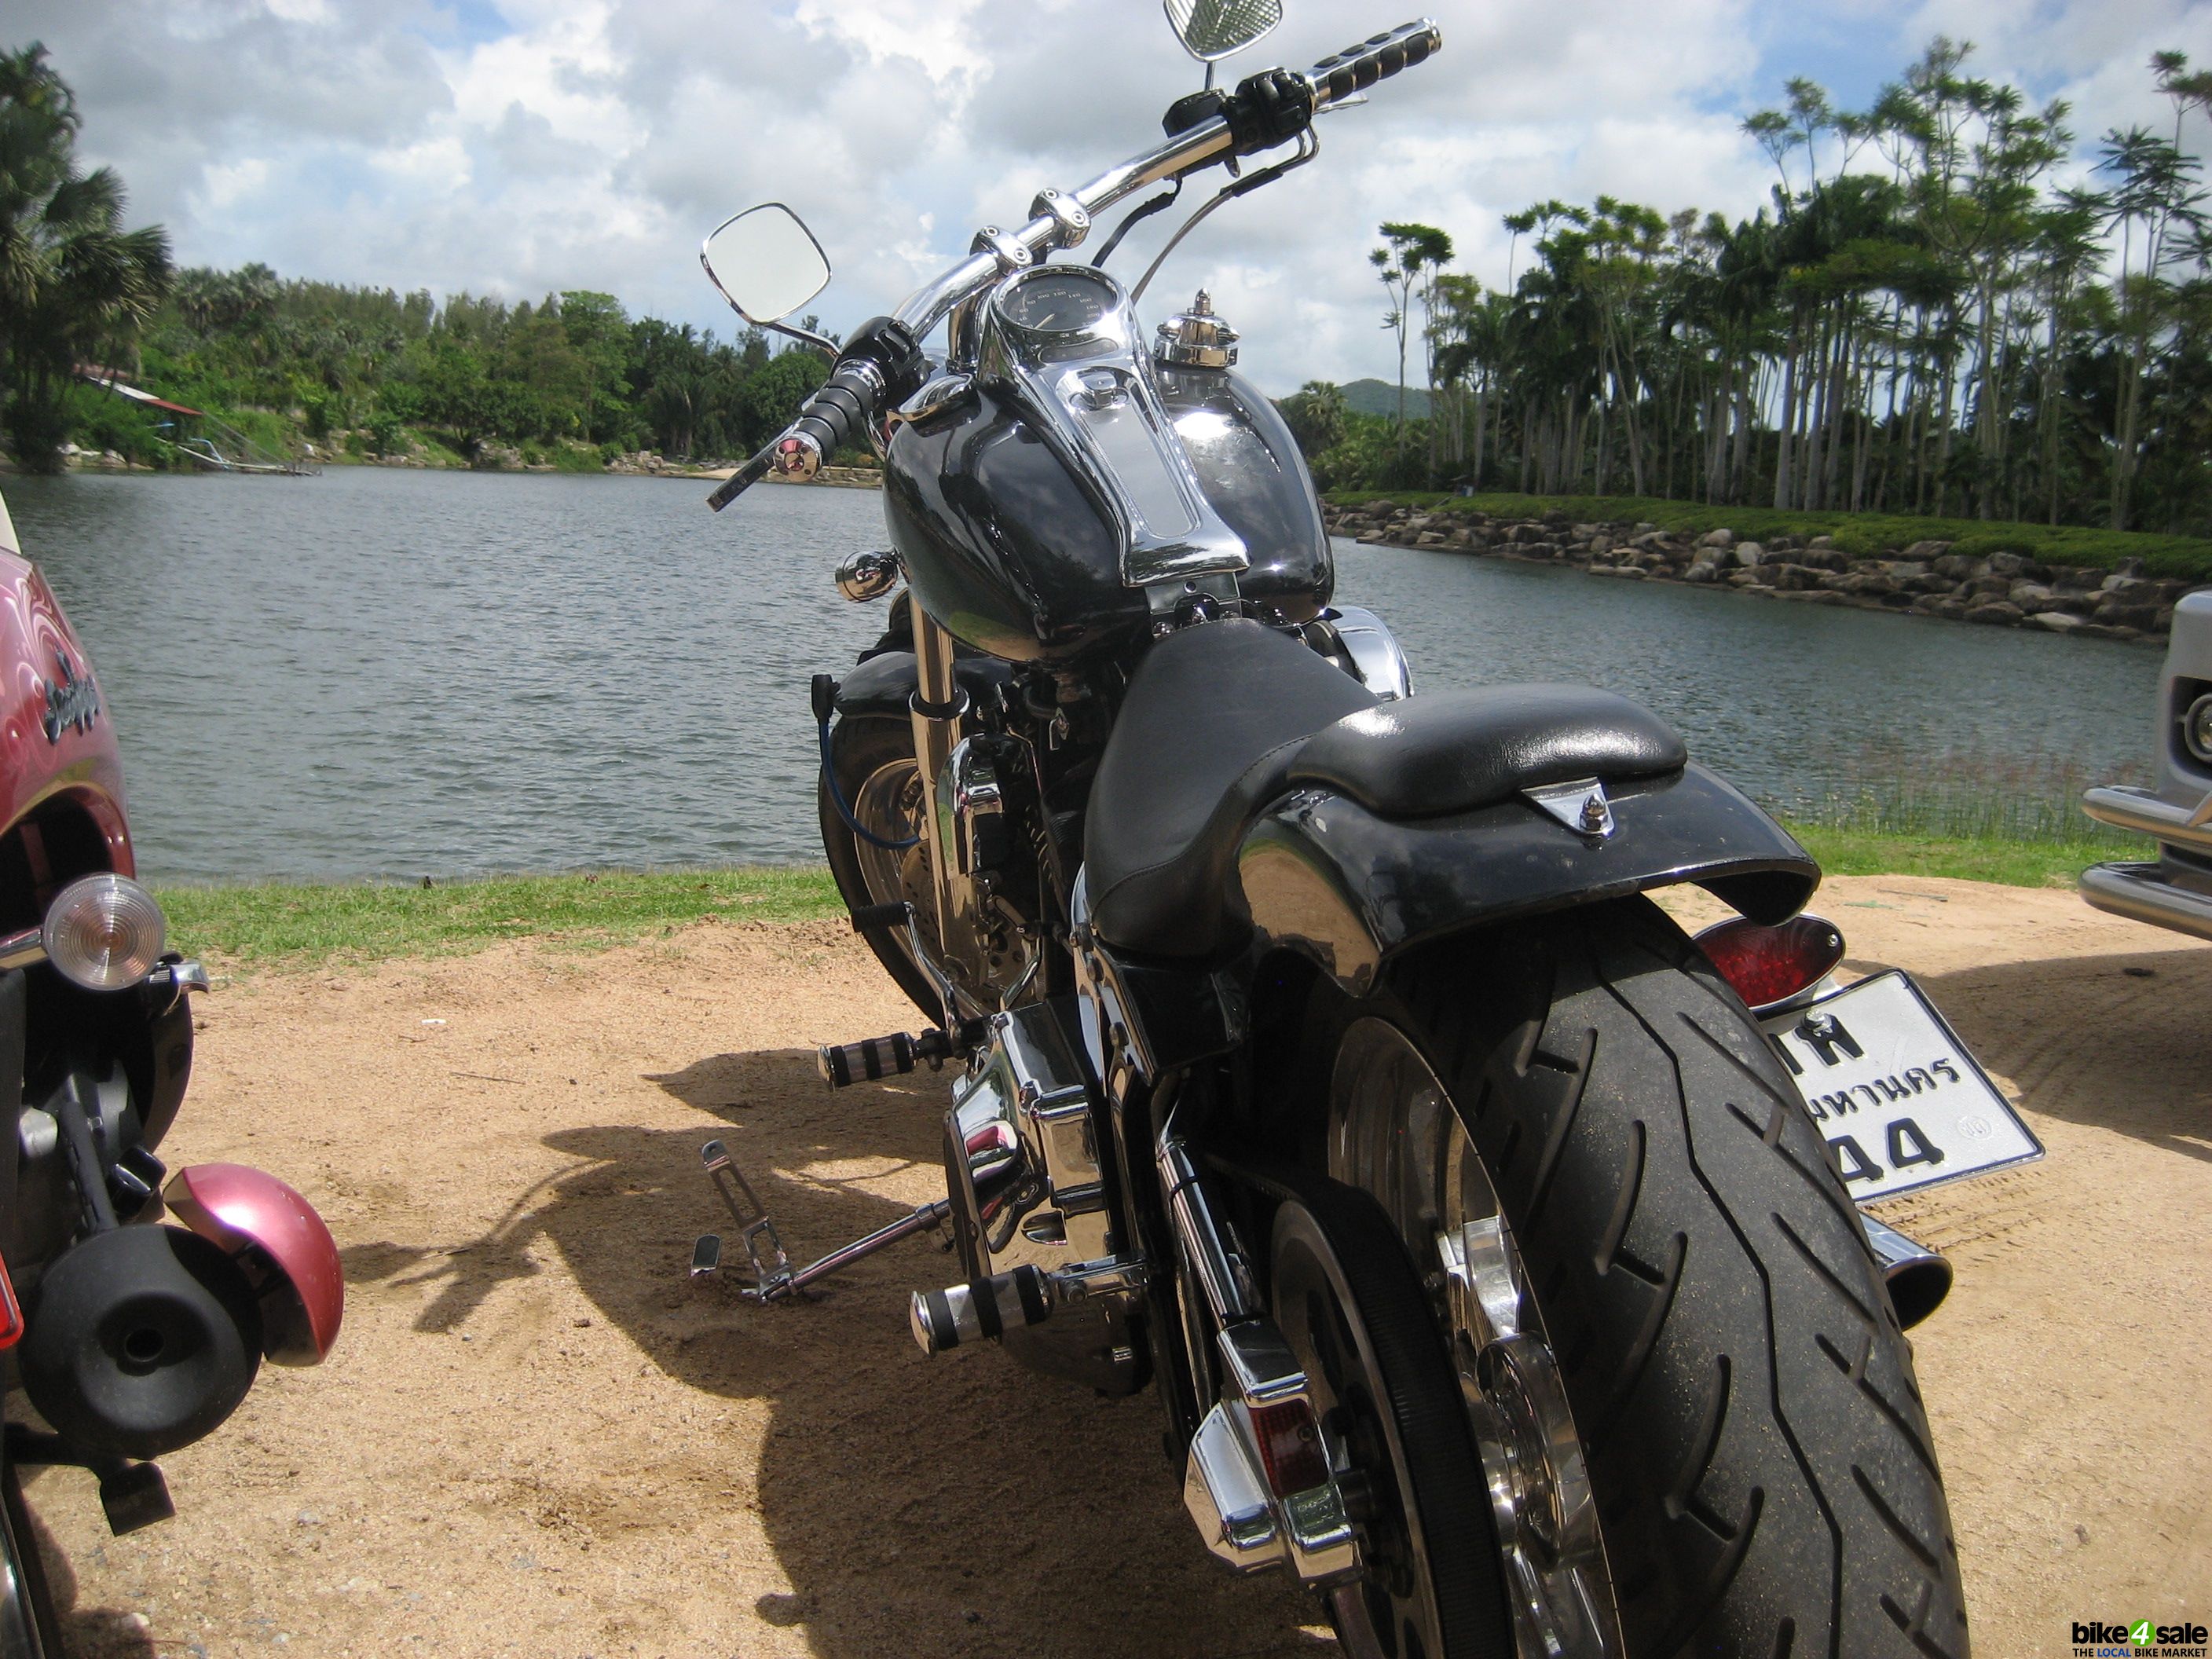 Harley-Davidson Softail 